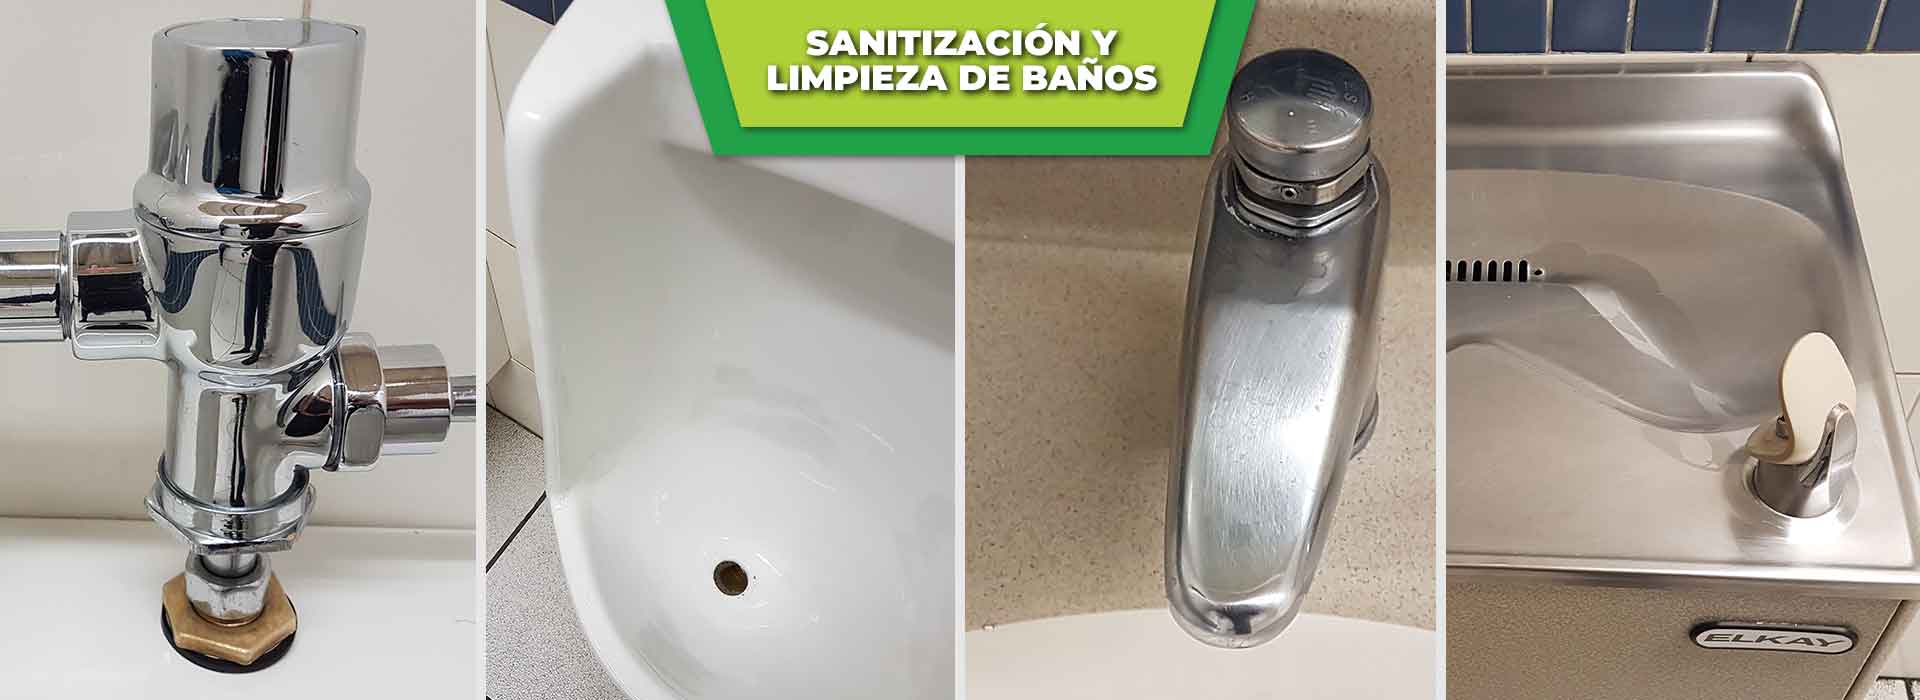 sanitizacion-y-limpieza-de-baños